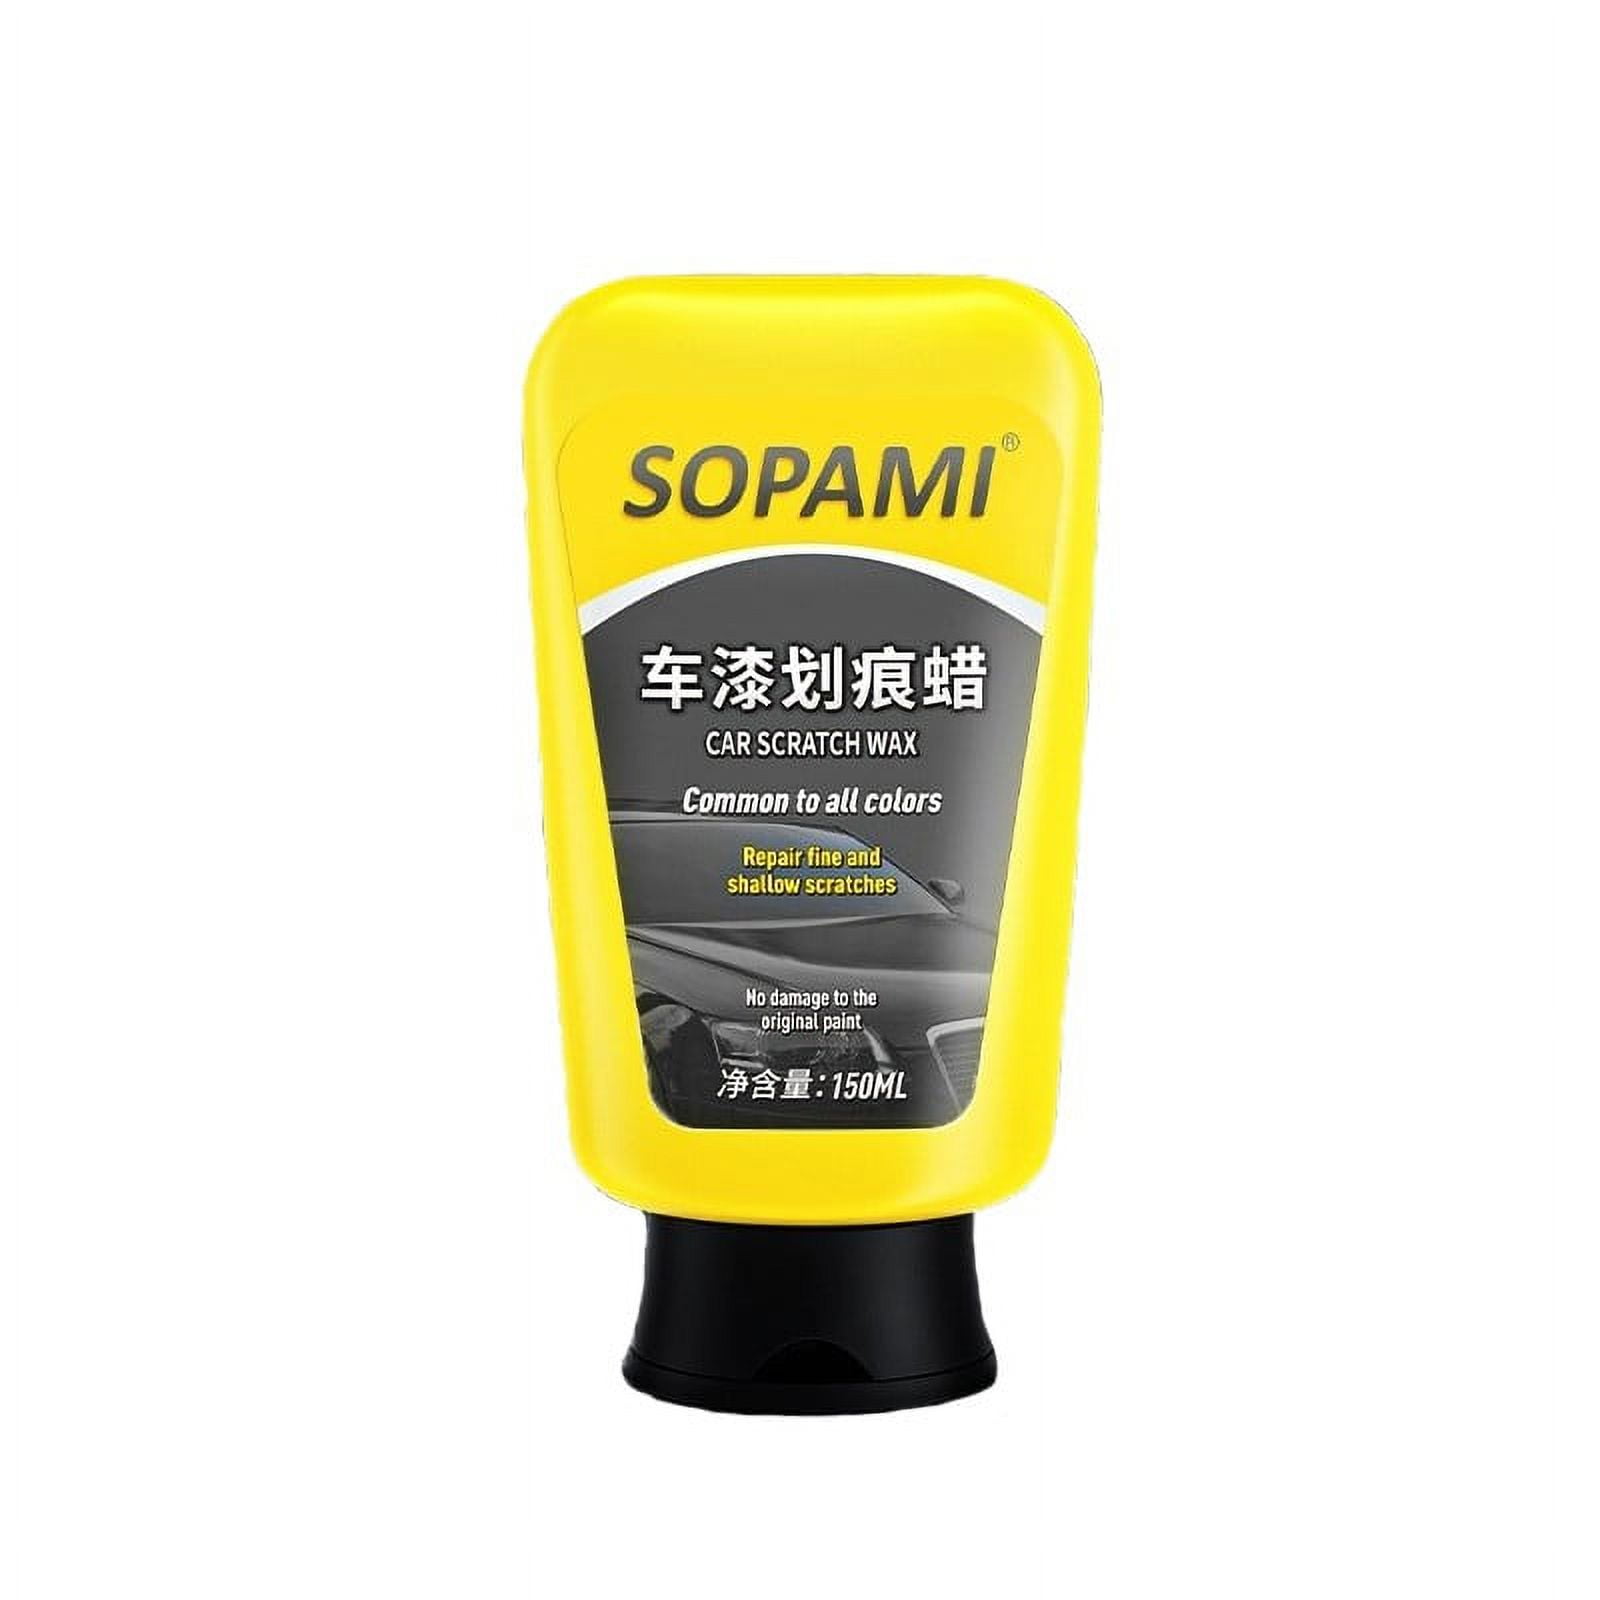 500ml Sopami Car Coating Spray Protection Quick Car Wax Polish Motorcycle  Set US